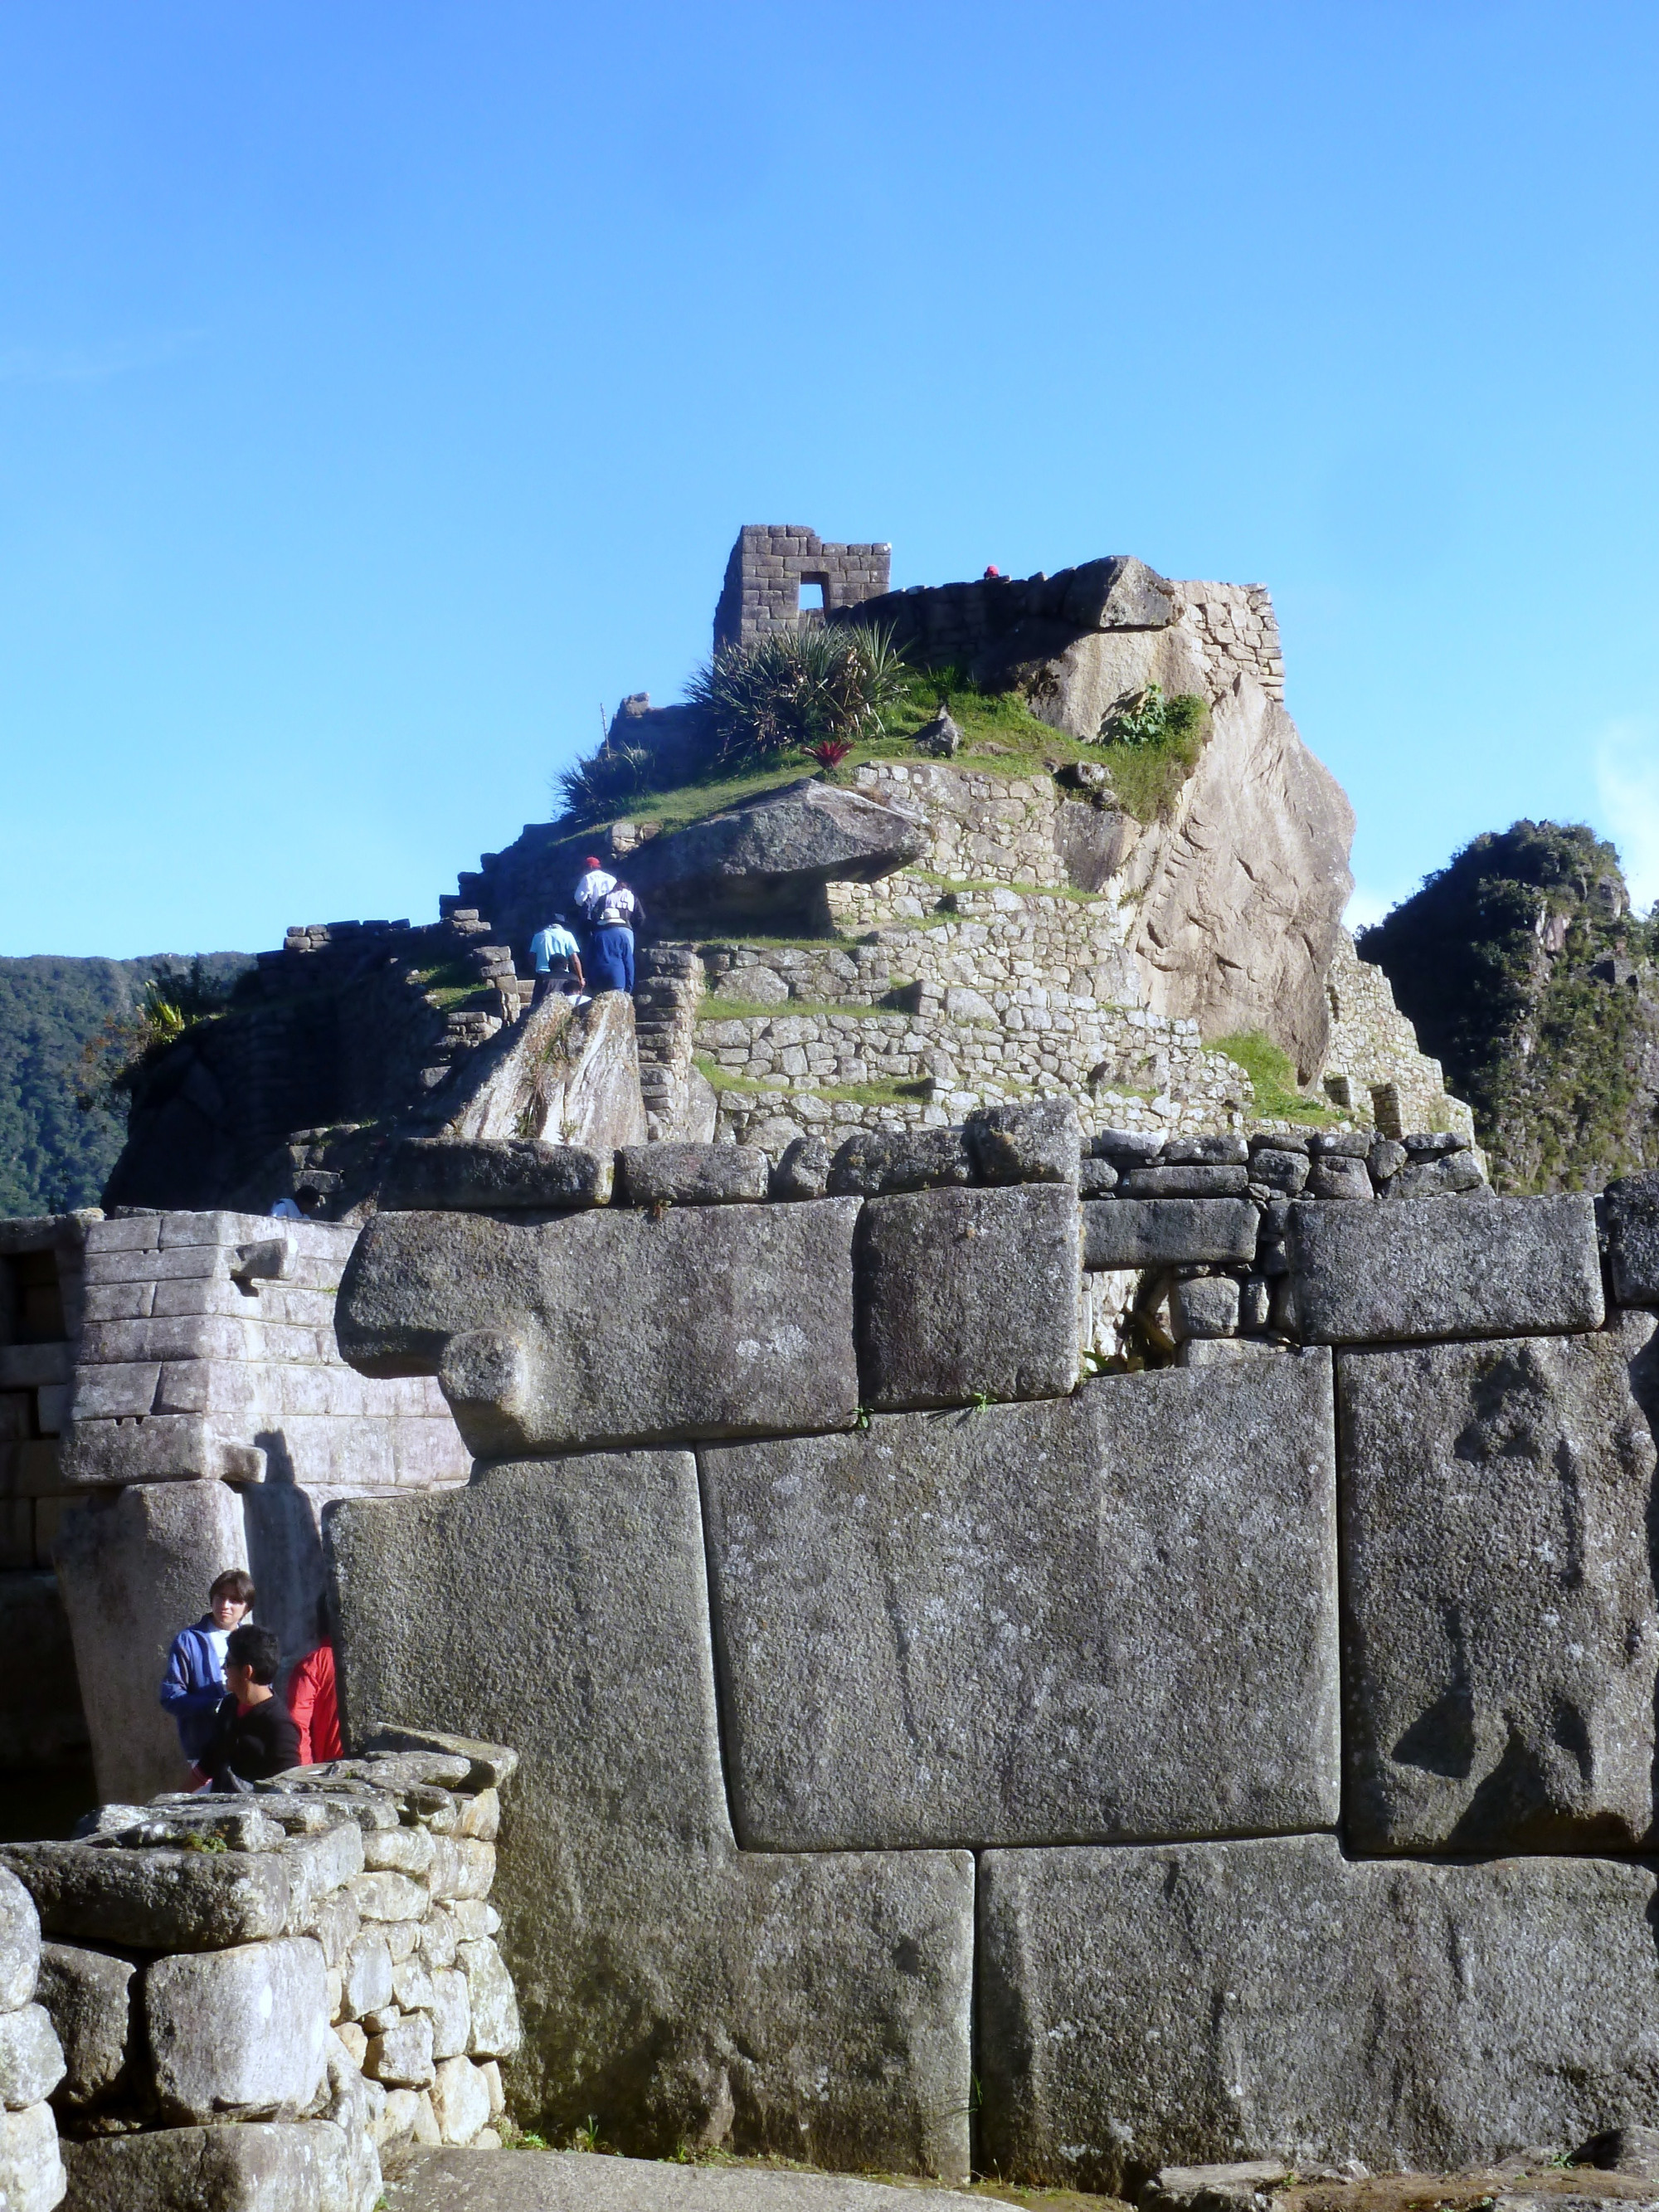 Inca Wall Constructon